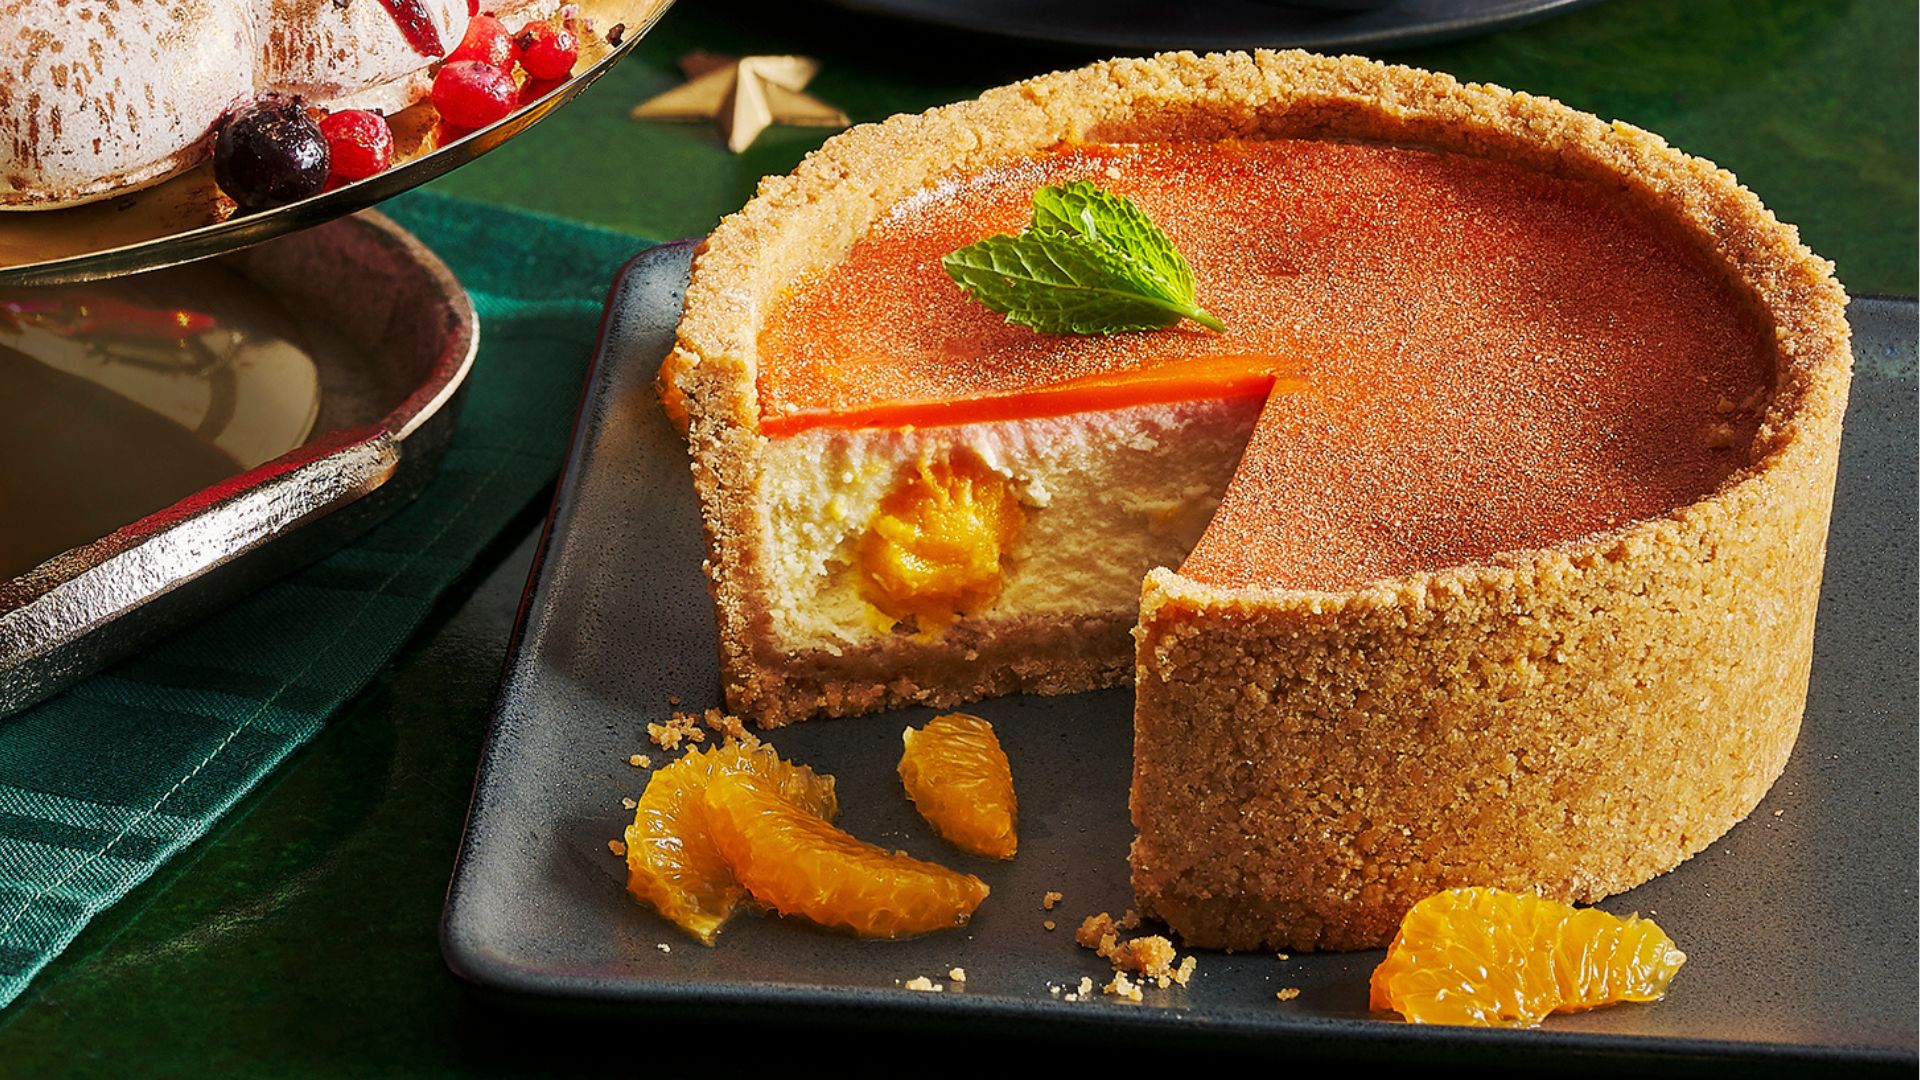 Tesco Finest Orange and Mascarpone High-wall Cheesecake